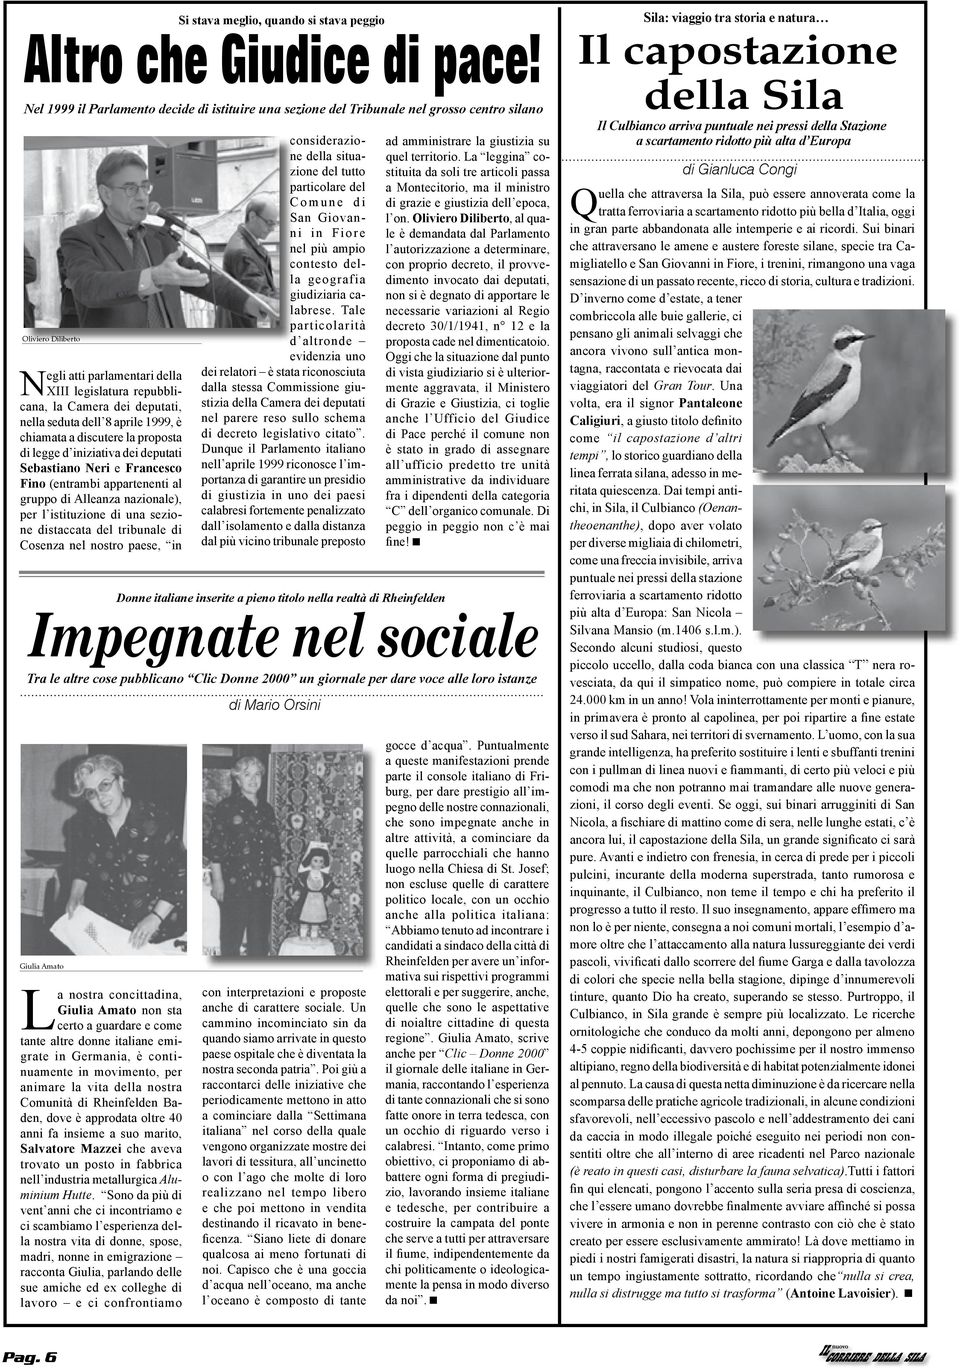 nella seduta dell 8 aprile 1999, è chiamata a discutere la proposta di legge d iniziativa dei deputati Sebastiano Neri e Francesco Fino (entrambi appartenenti al gruppo di Alleanza nazionale), per l